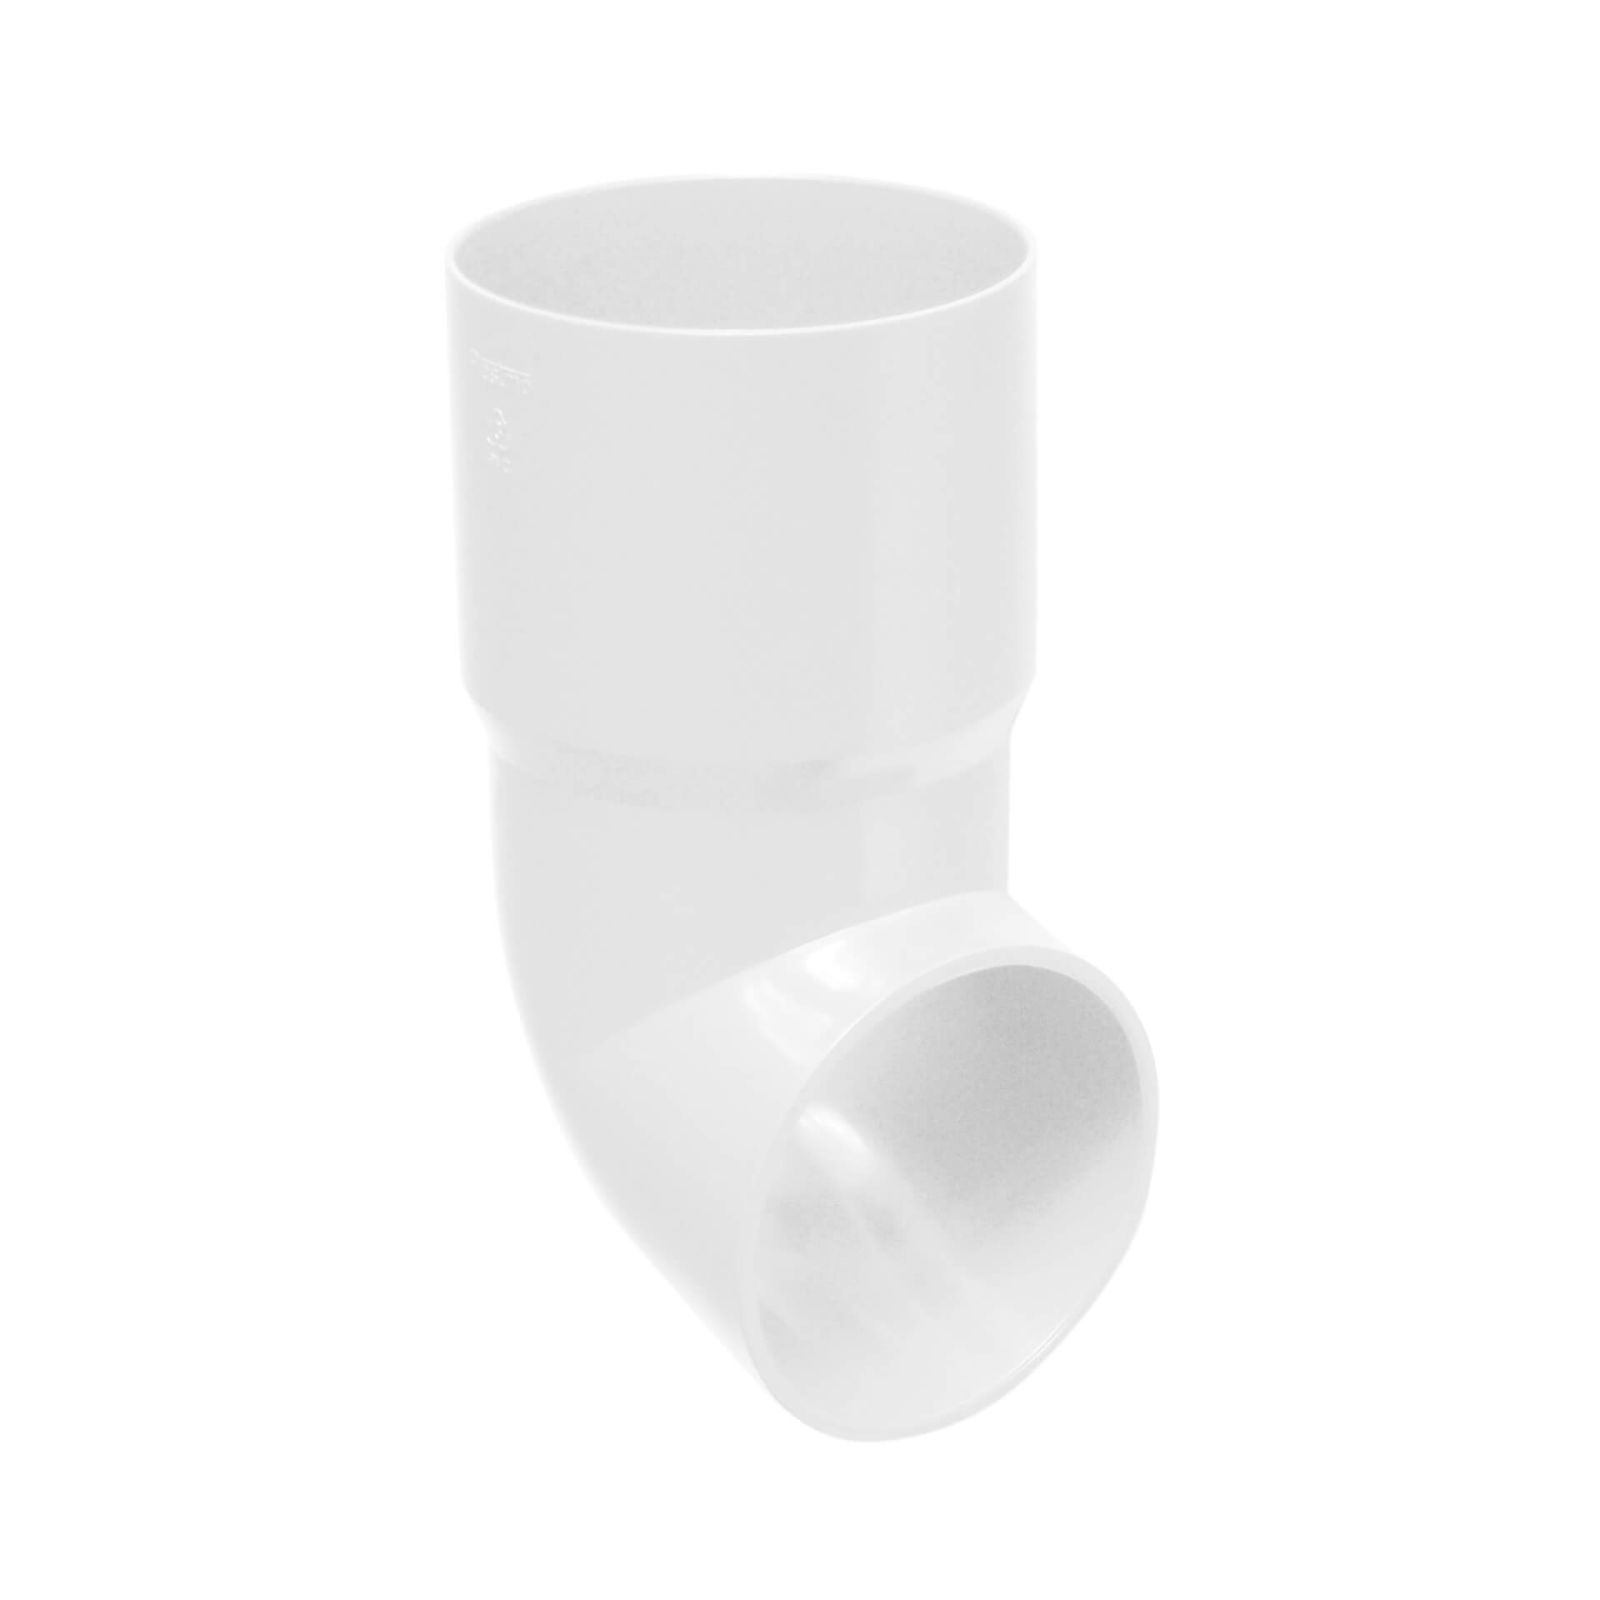 Fallrohrauslauf | PVC | Ø 75 mm | Farbe Weiß